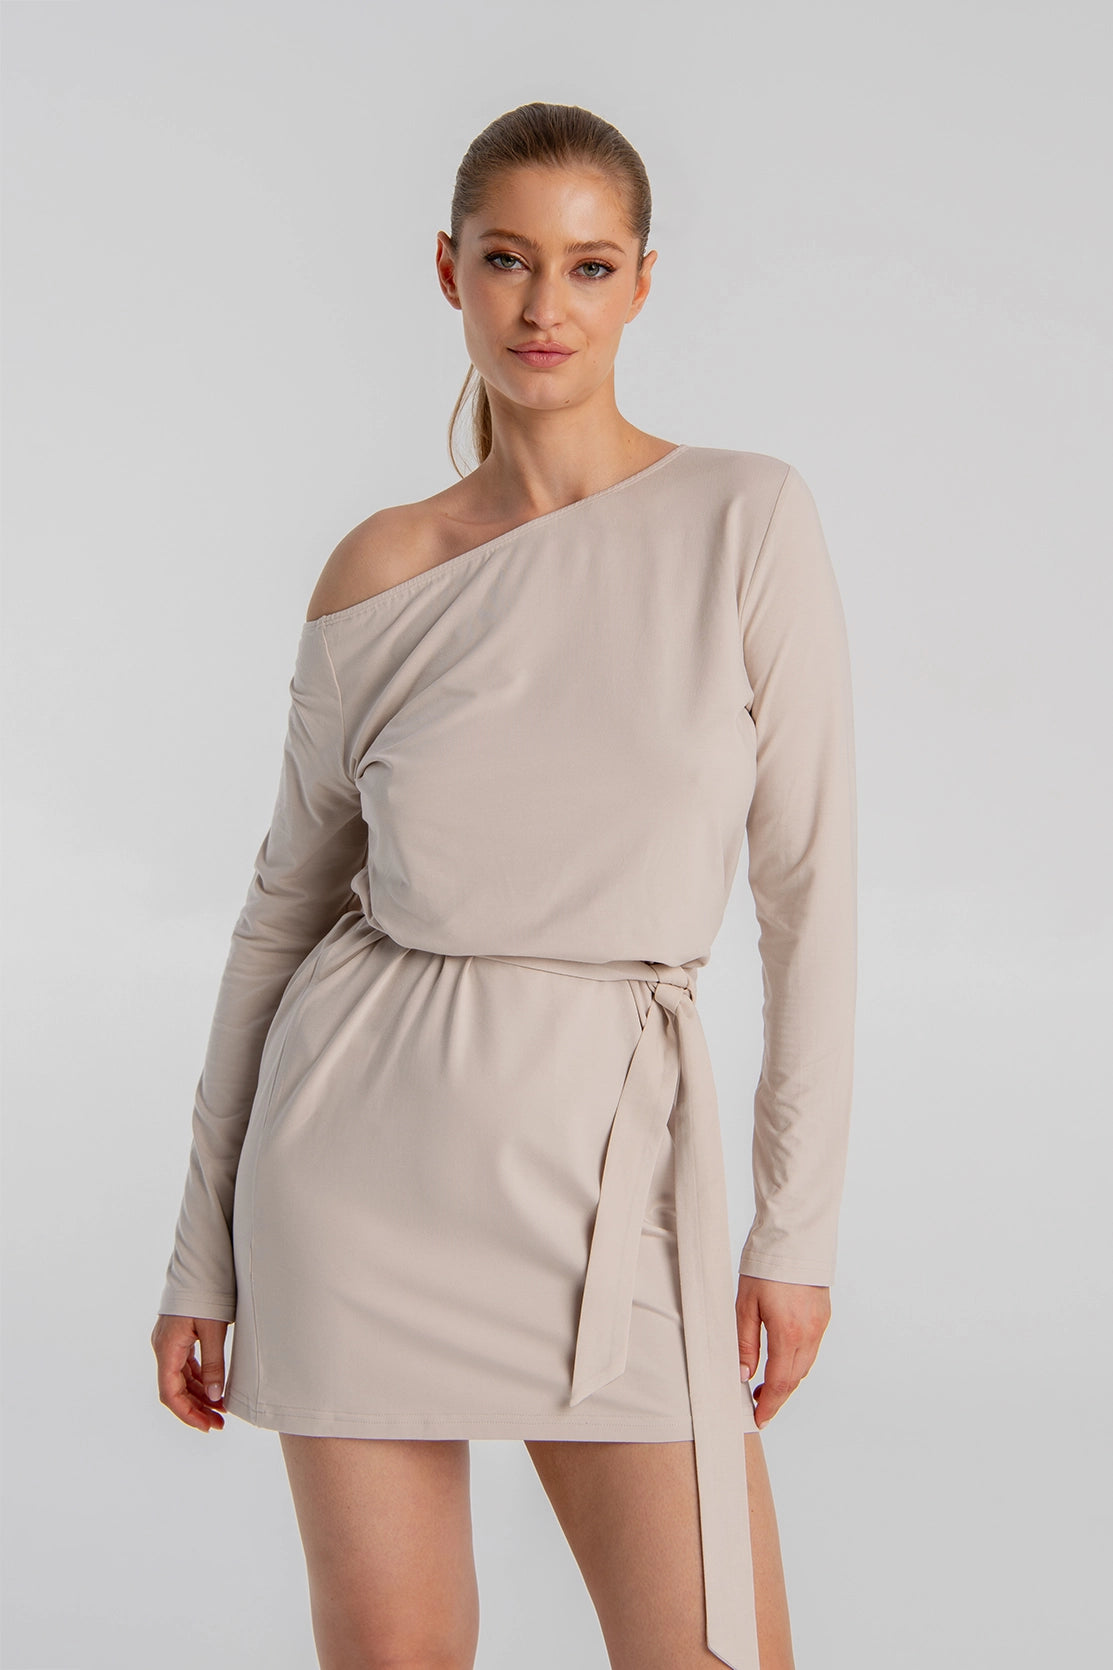 jasnobeżowa luźna sukienka mini przed kolano z wiązaniem wokół talli z asymetrycznym dekoltem "Light Beige"